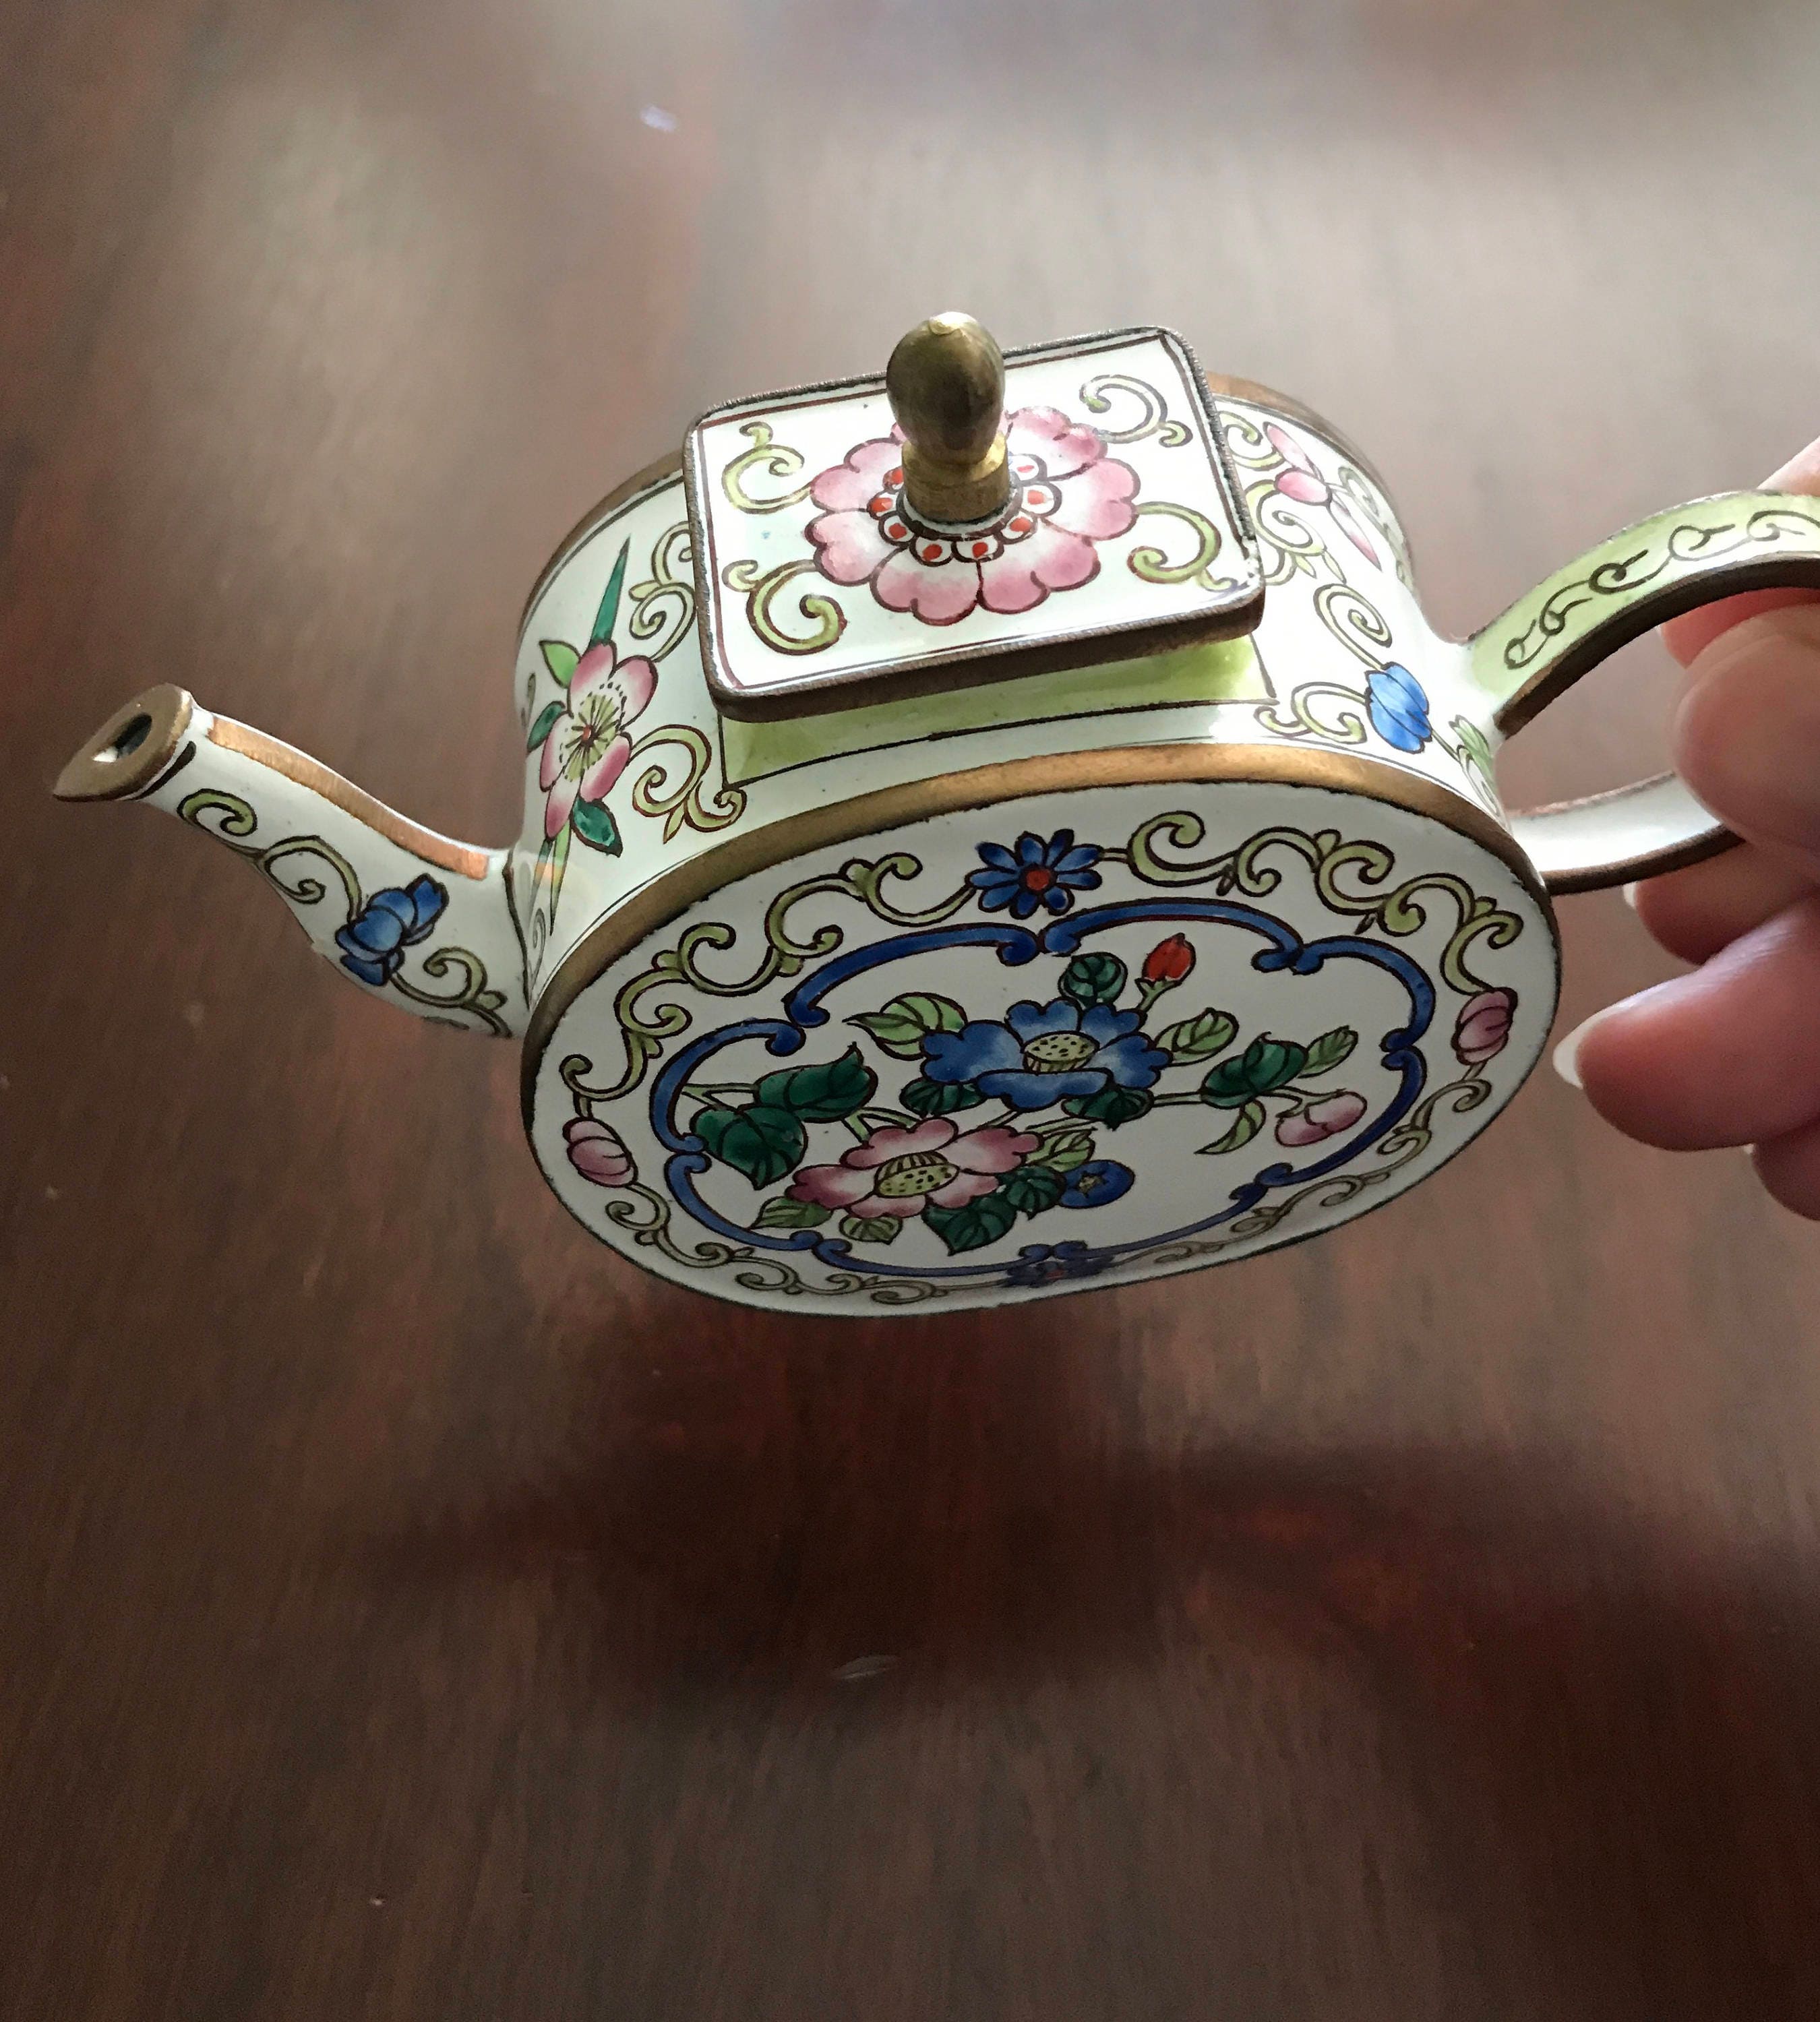 Kelvin Chen Teapot, floral enamel mini Teapot, collectible Teapot